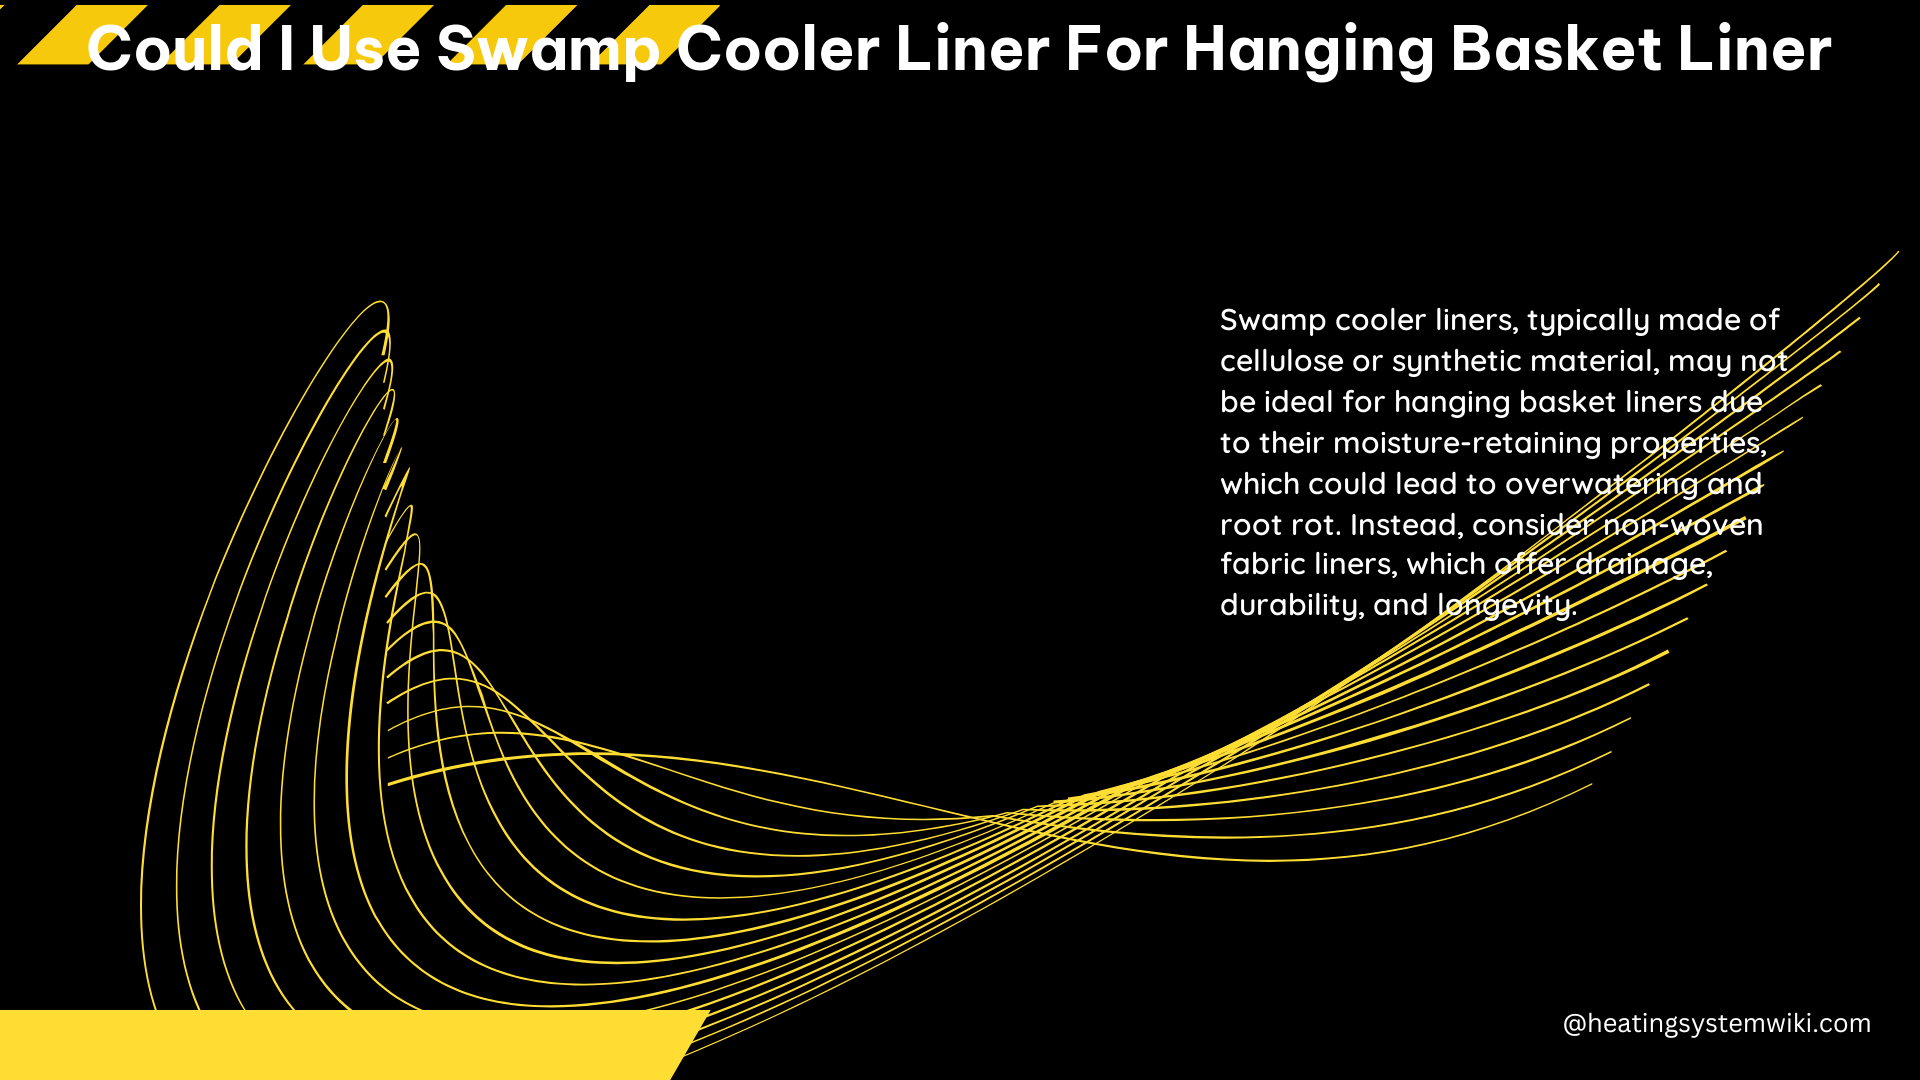 Could I Use Swamp Cooler Liner for Hanging Basket Liner